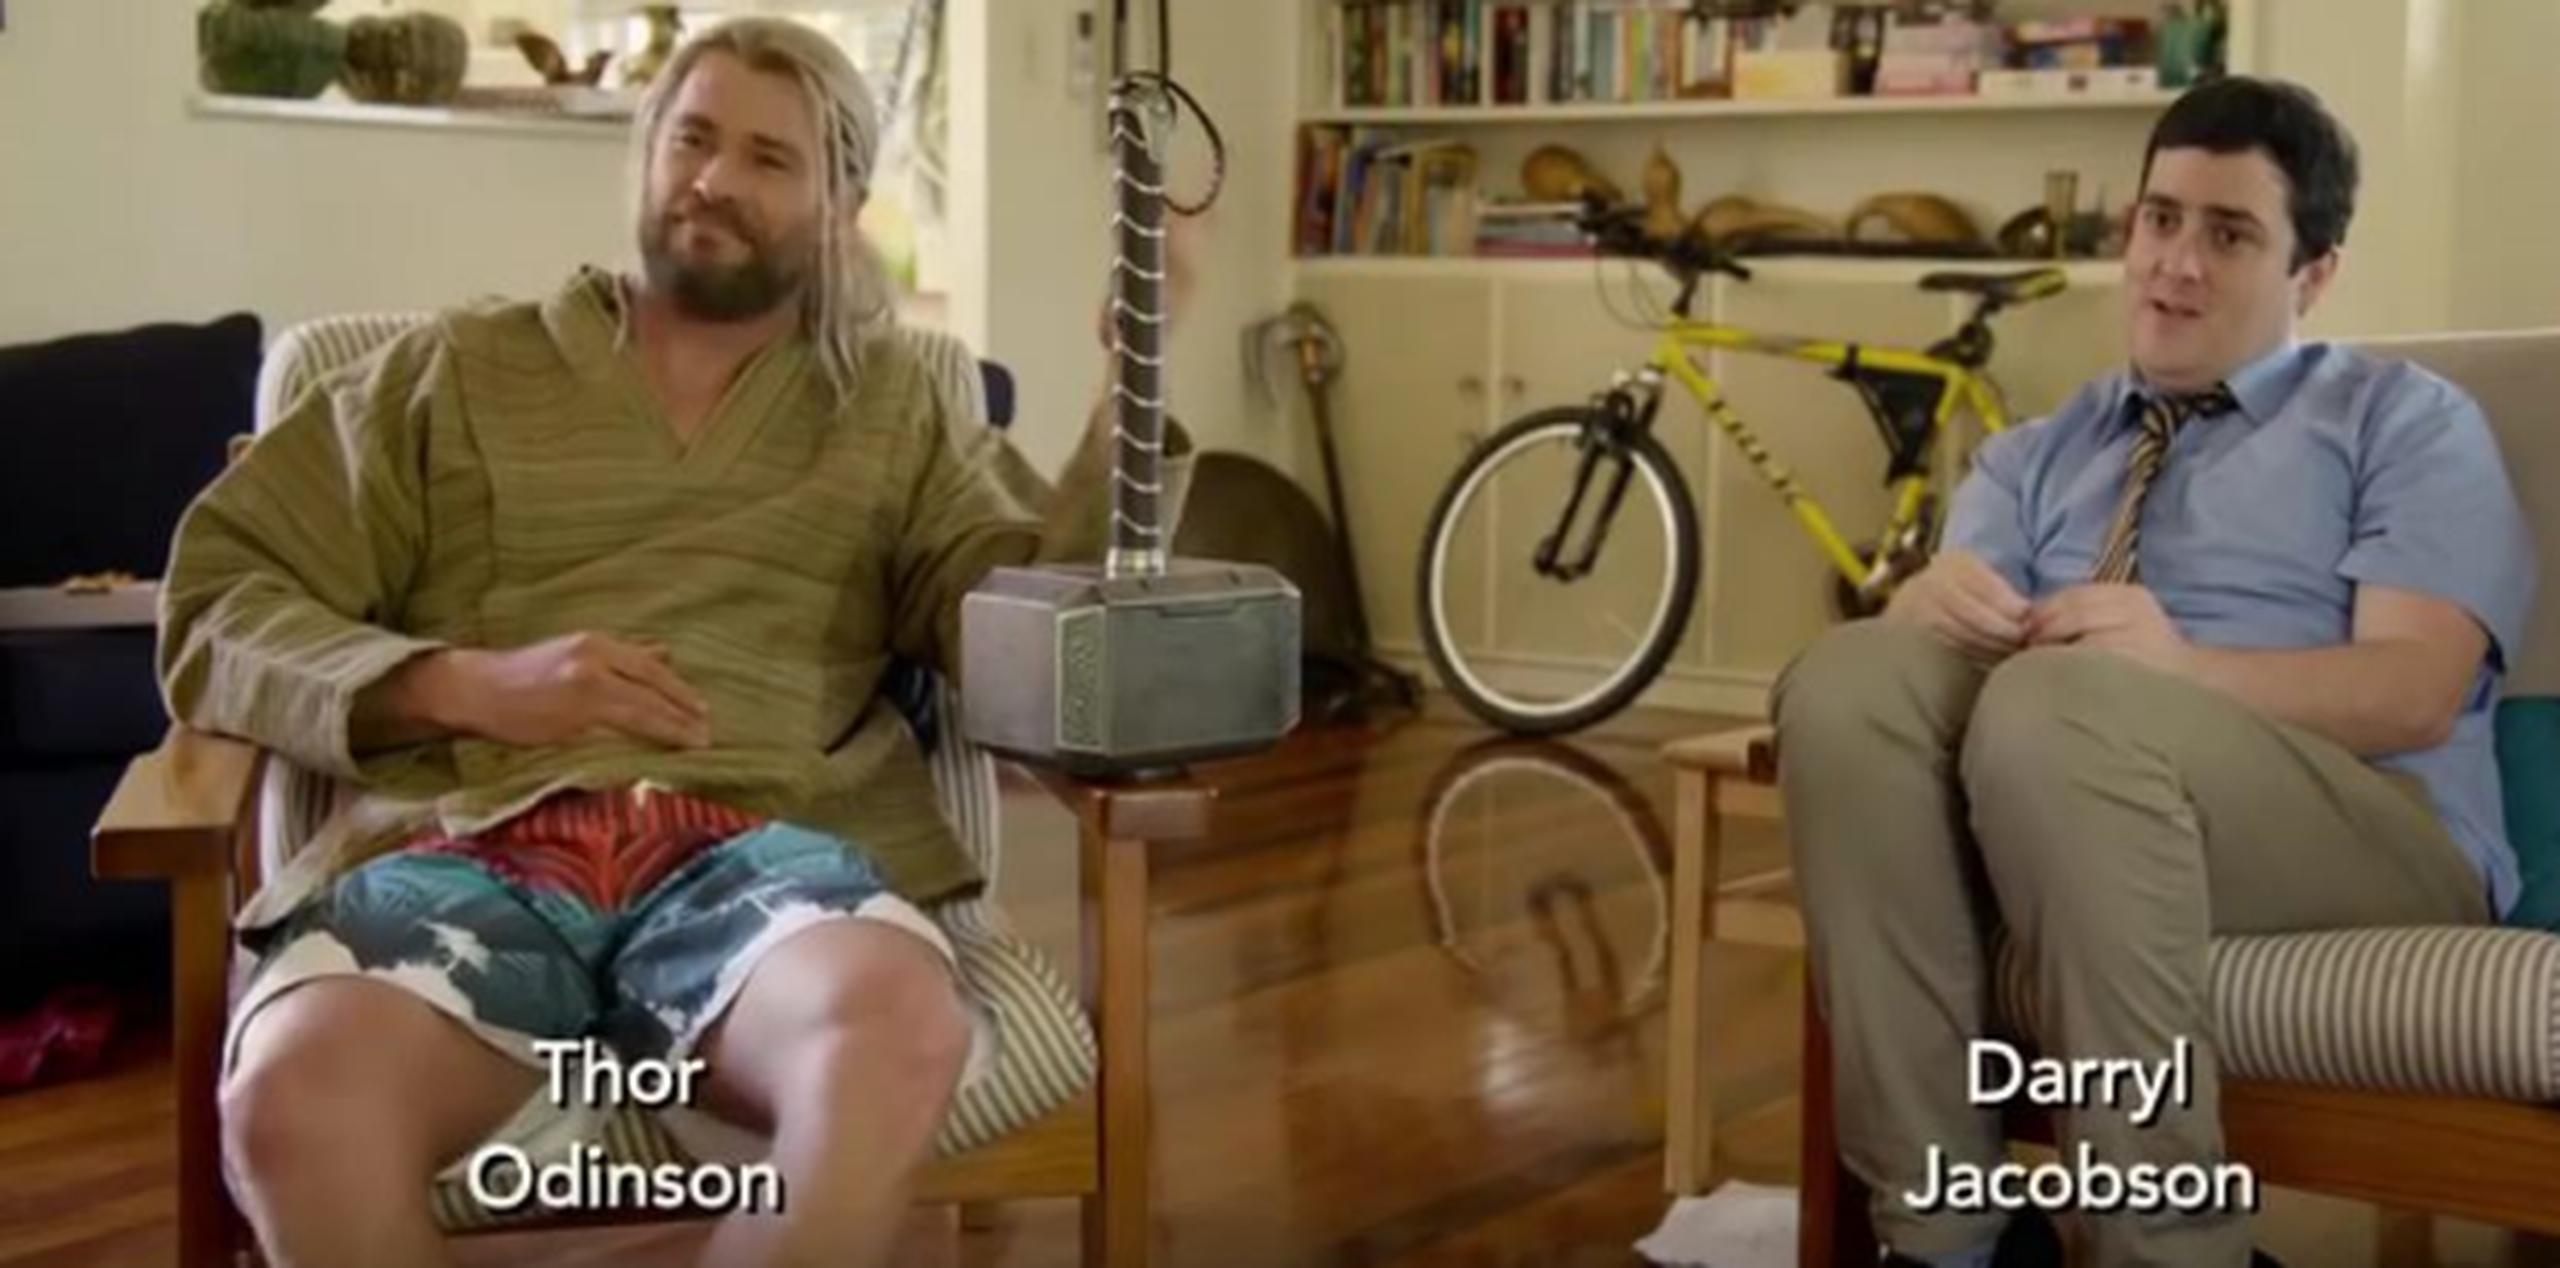 Thor sese mudó a Australia y se fue a vivir con Darryl Jacobson, su nuevo compañero de departamento. (Captura/ YouTube)